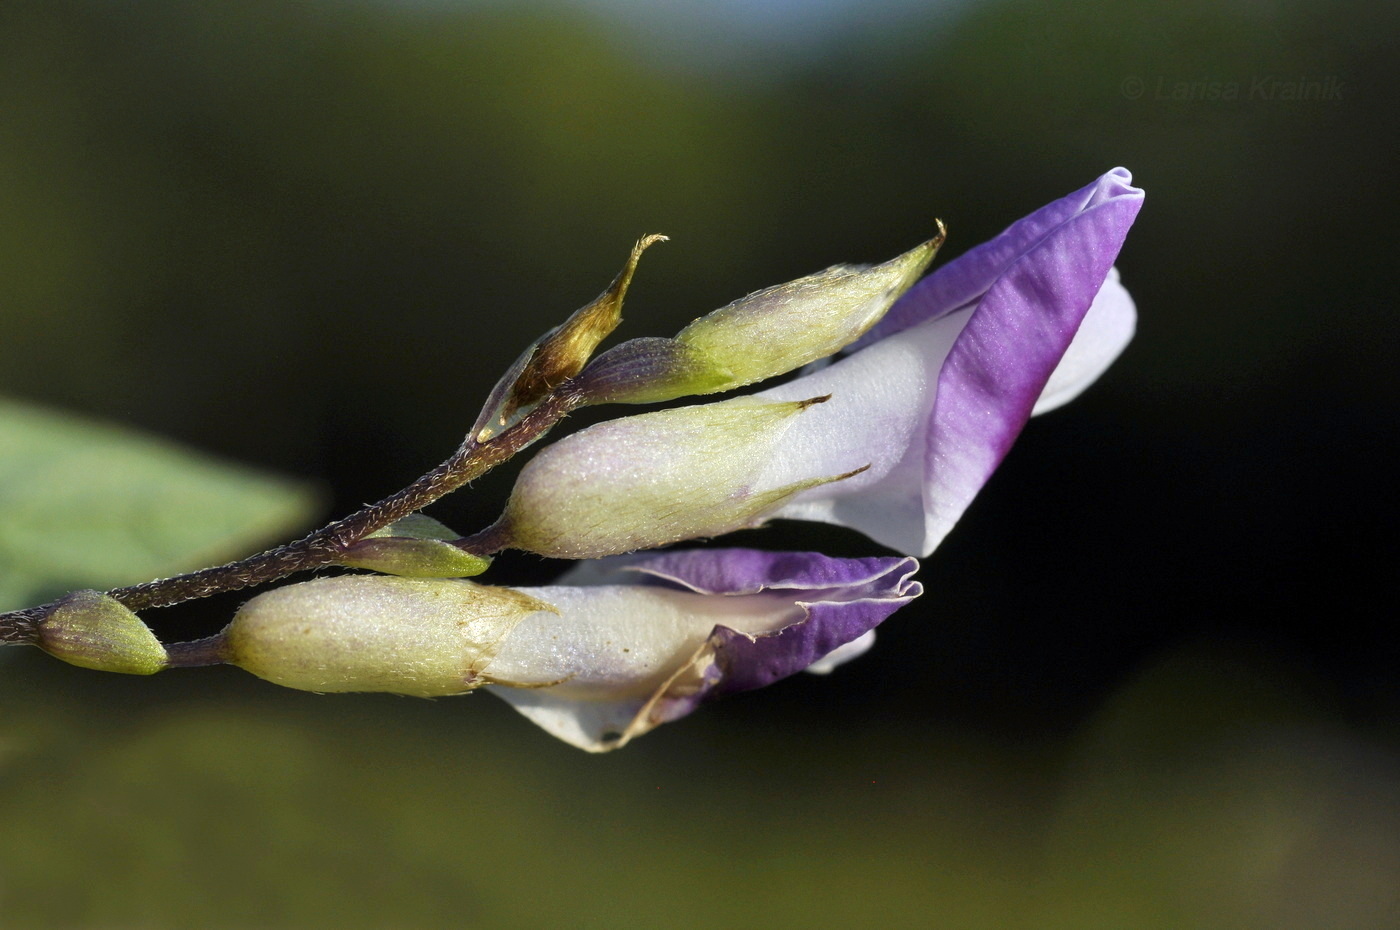 Image of Amphicarpaea japonica specimen.